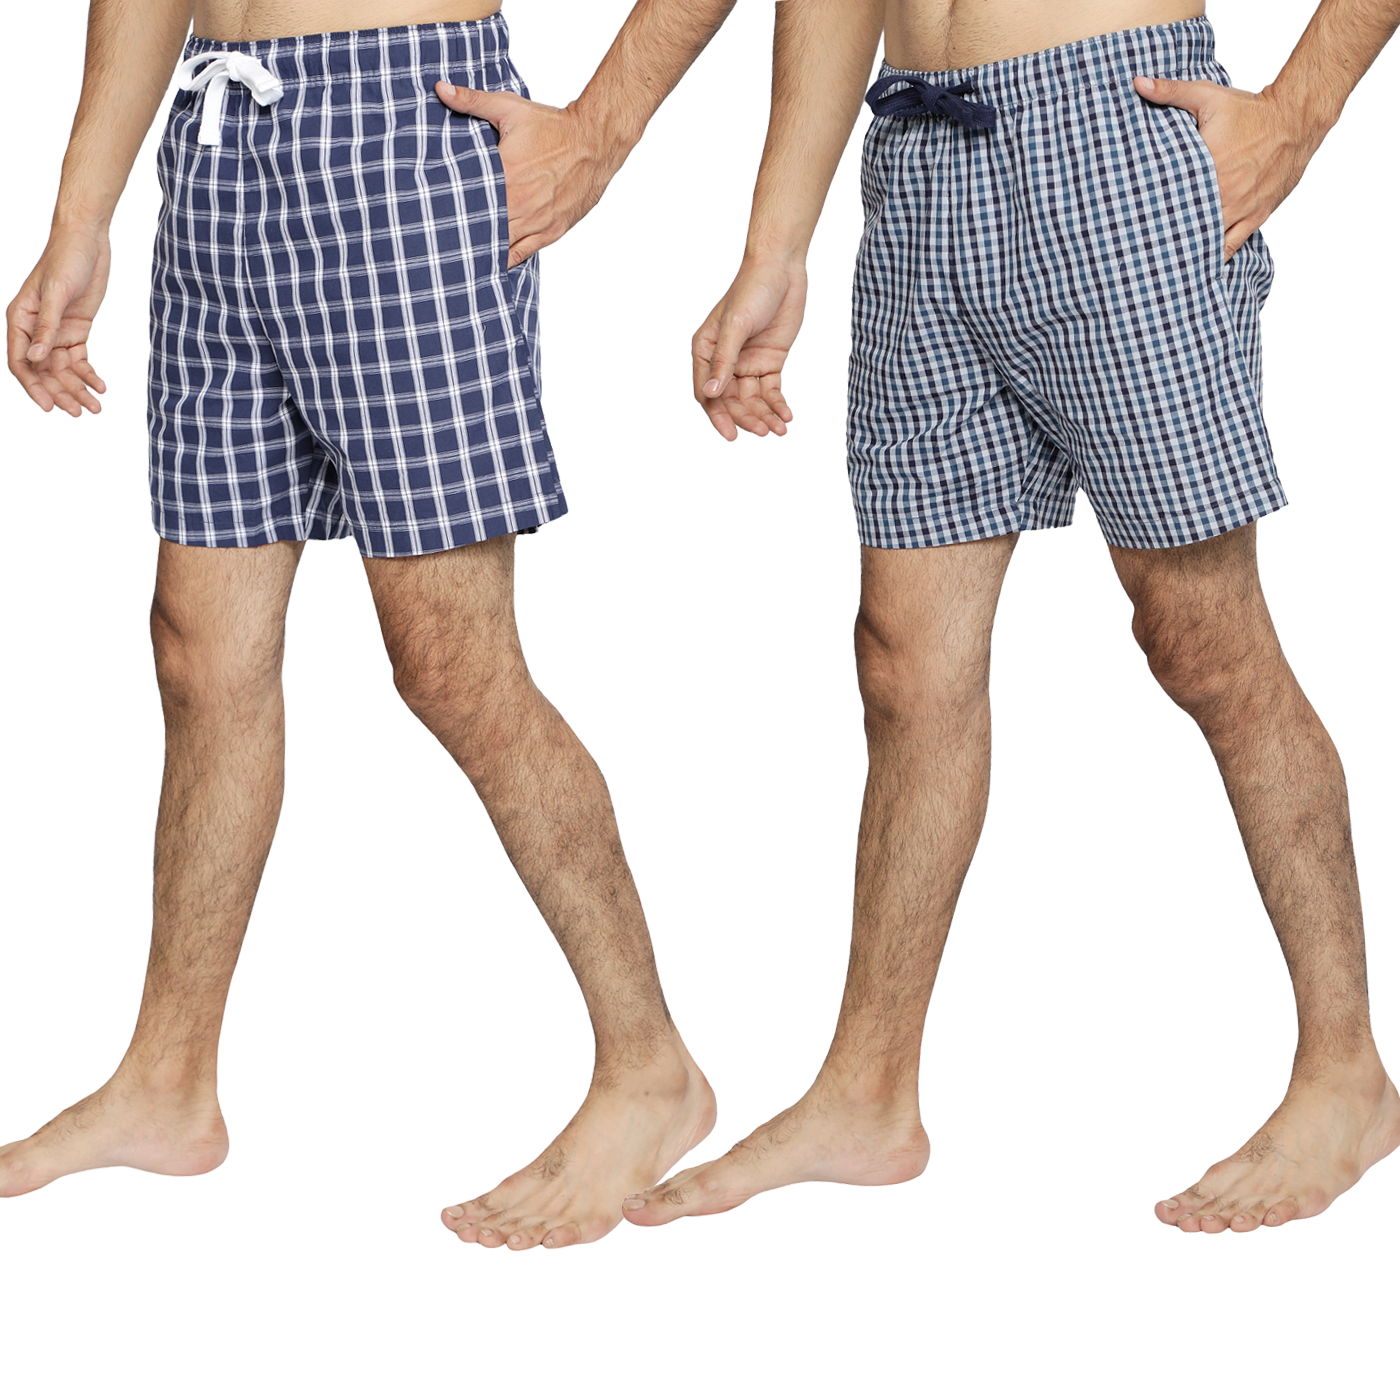 Lounge Shorts for Men-Navy Checks(Pack of 2)